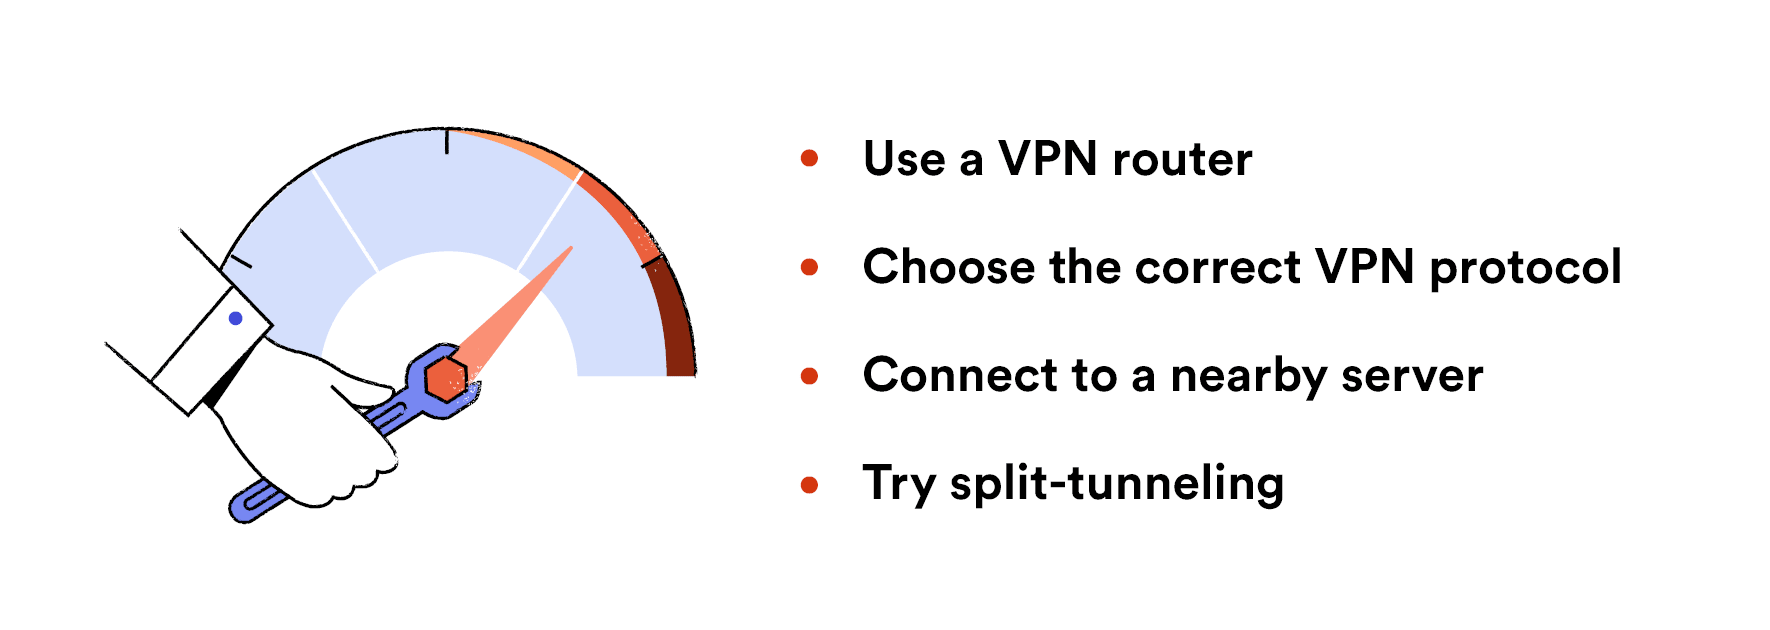 Schemat wyjaśniający, jak zwiększyć prędkość swojej usługi VPN